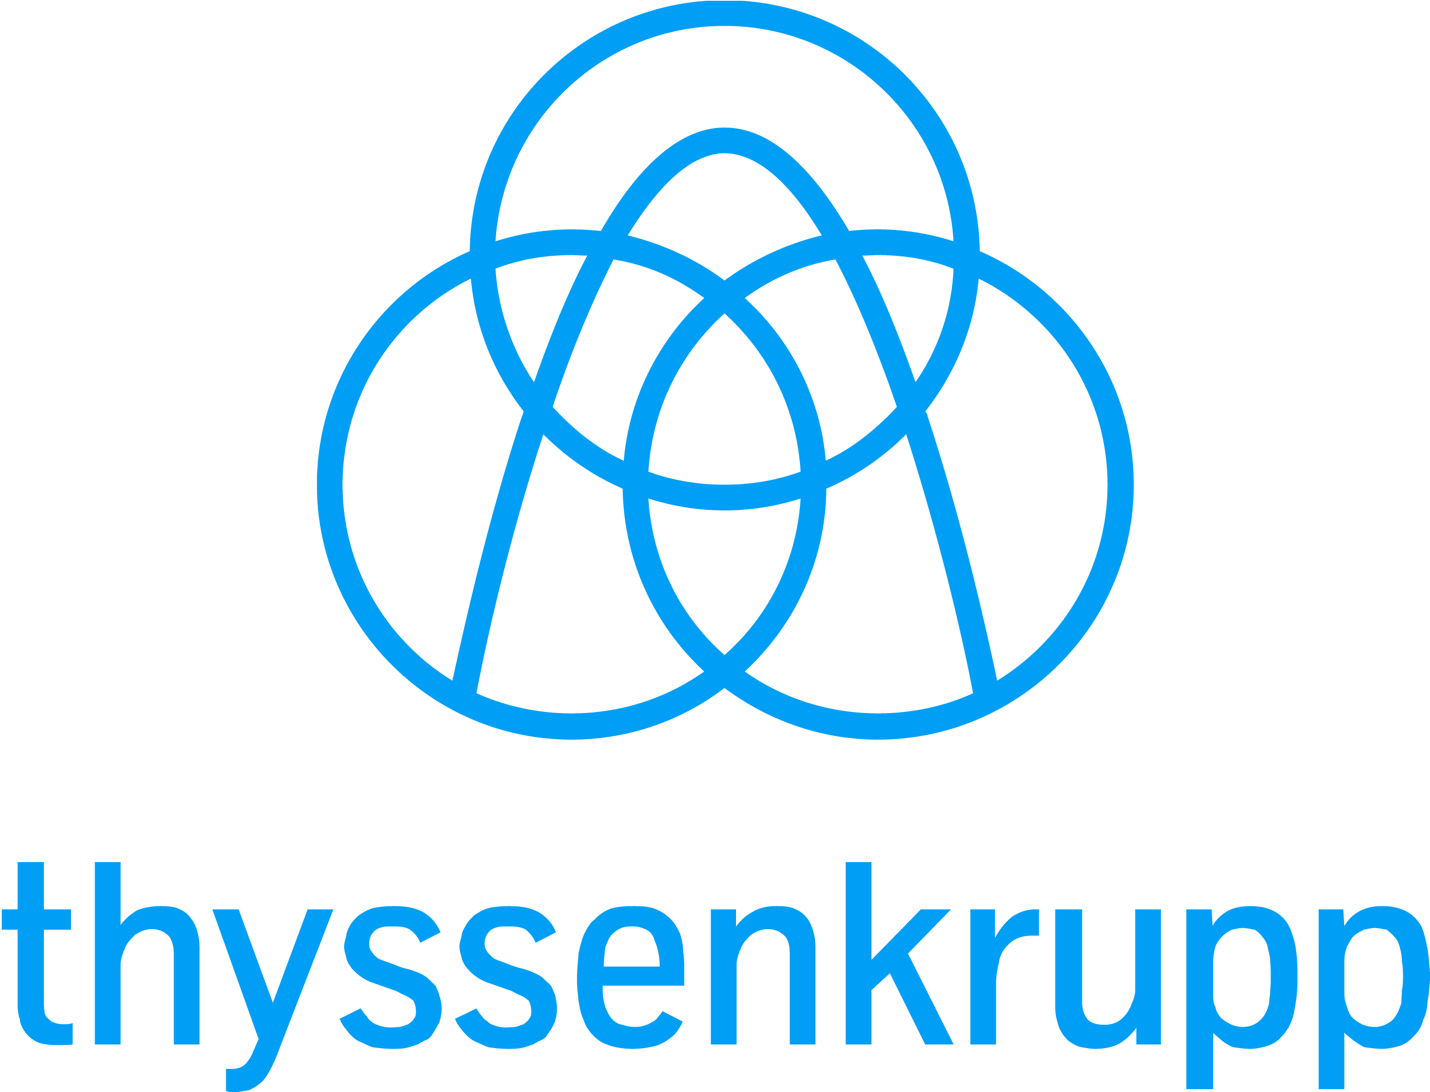 Abbildung: Logo thyssenkrupp AG, Essen